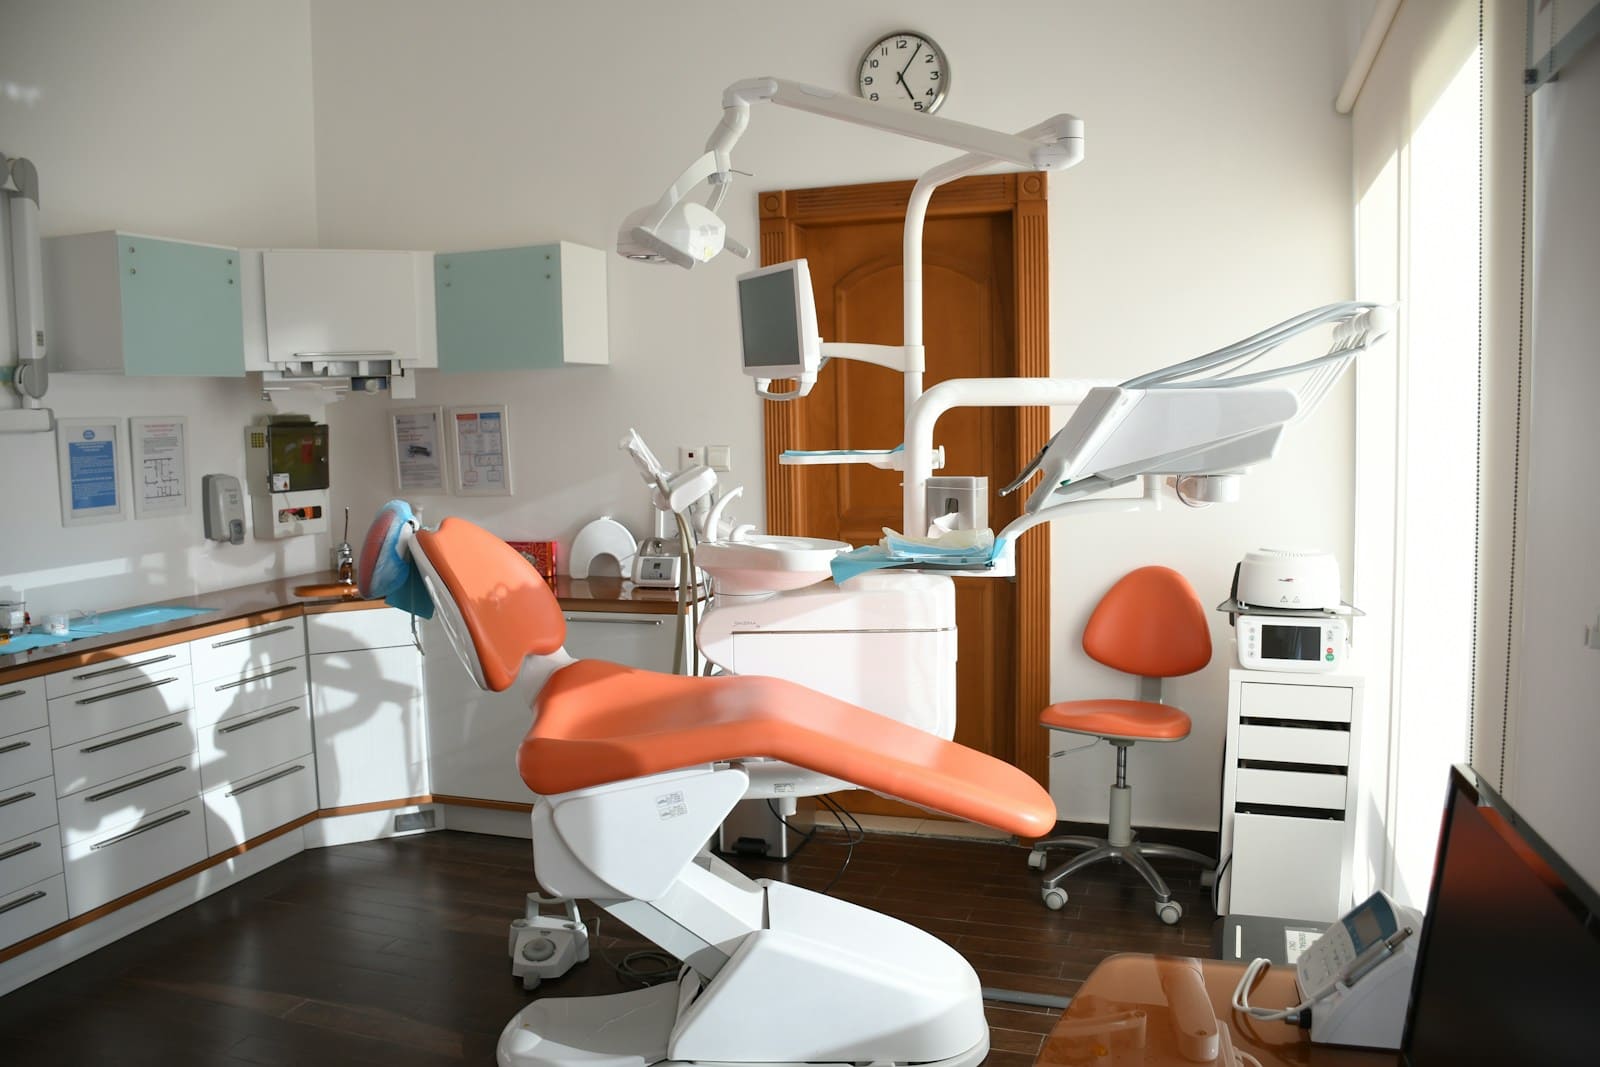 Almanya'da turuncu sandalyeli bir dişçi muayenehanesi.